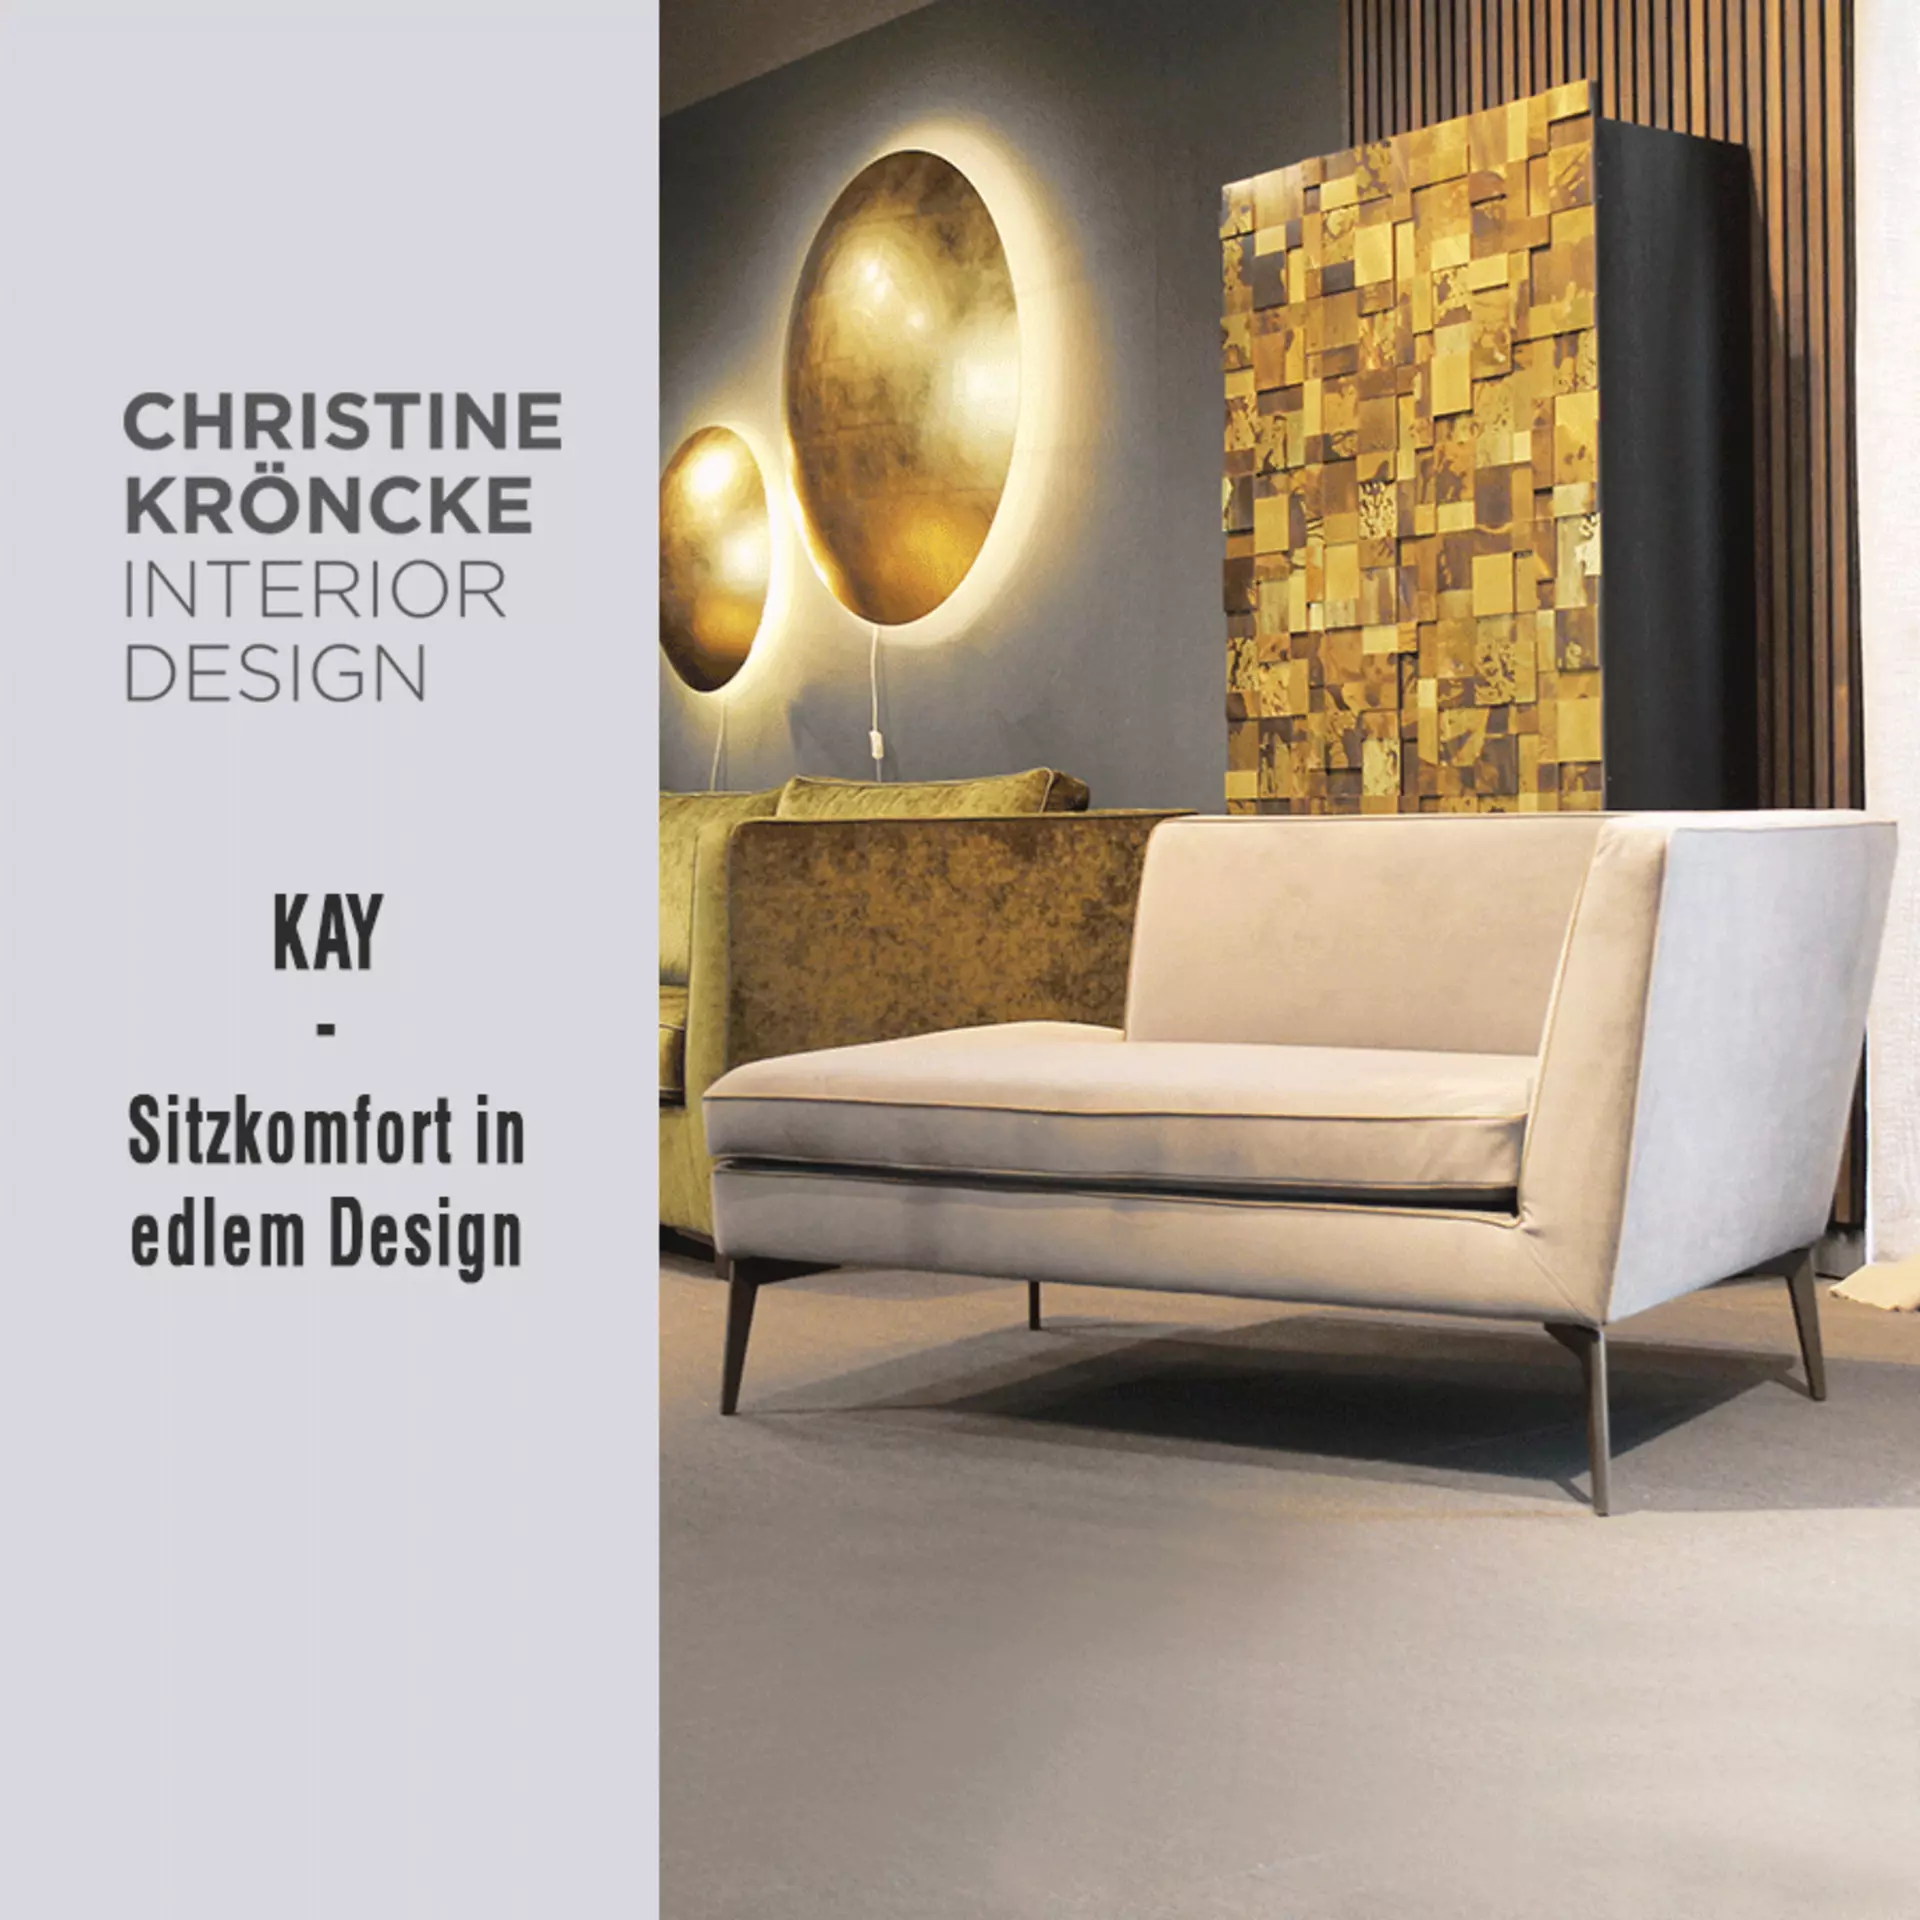 Die Recamiere KAY von Christine Kröncke ist Sitzkomfort in edlem Design - jetzt zum exklusiven interni Aktionspreis